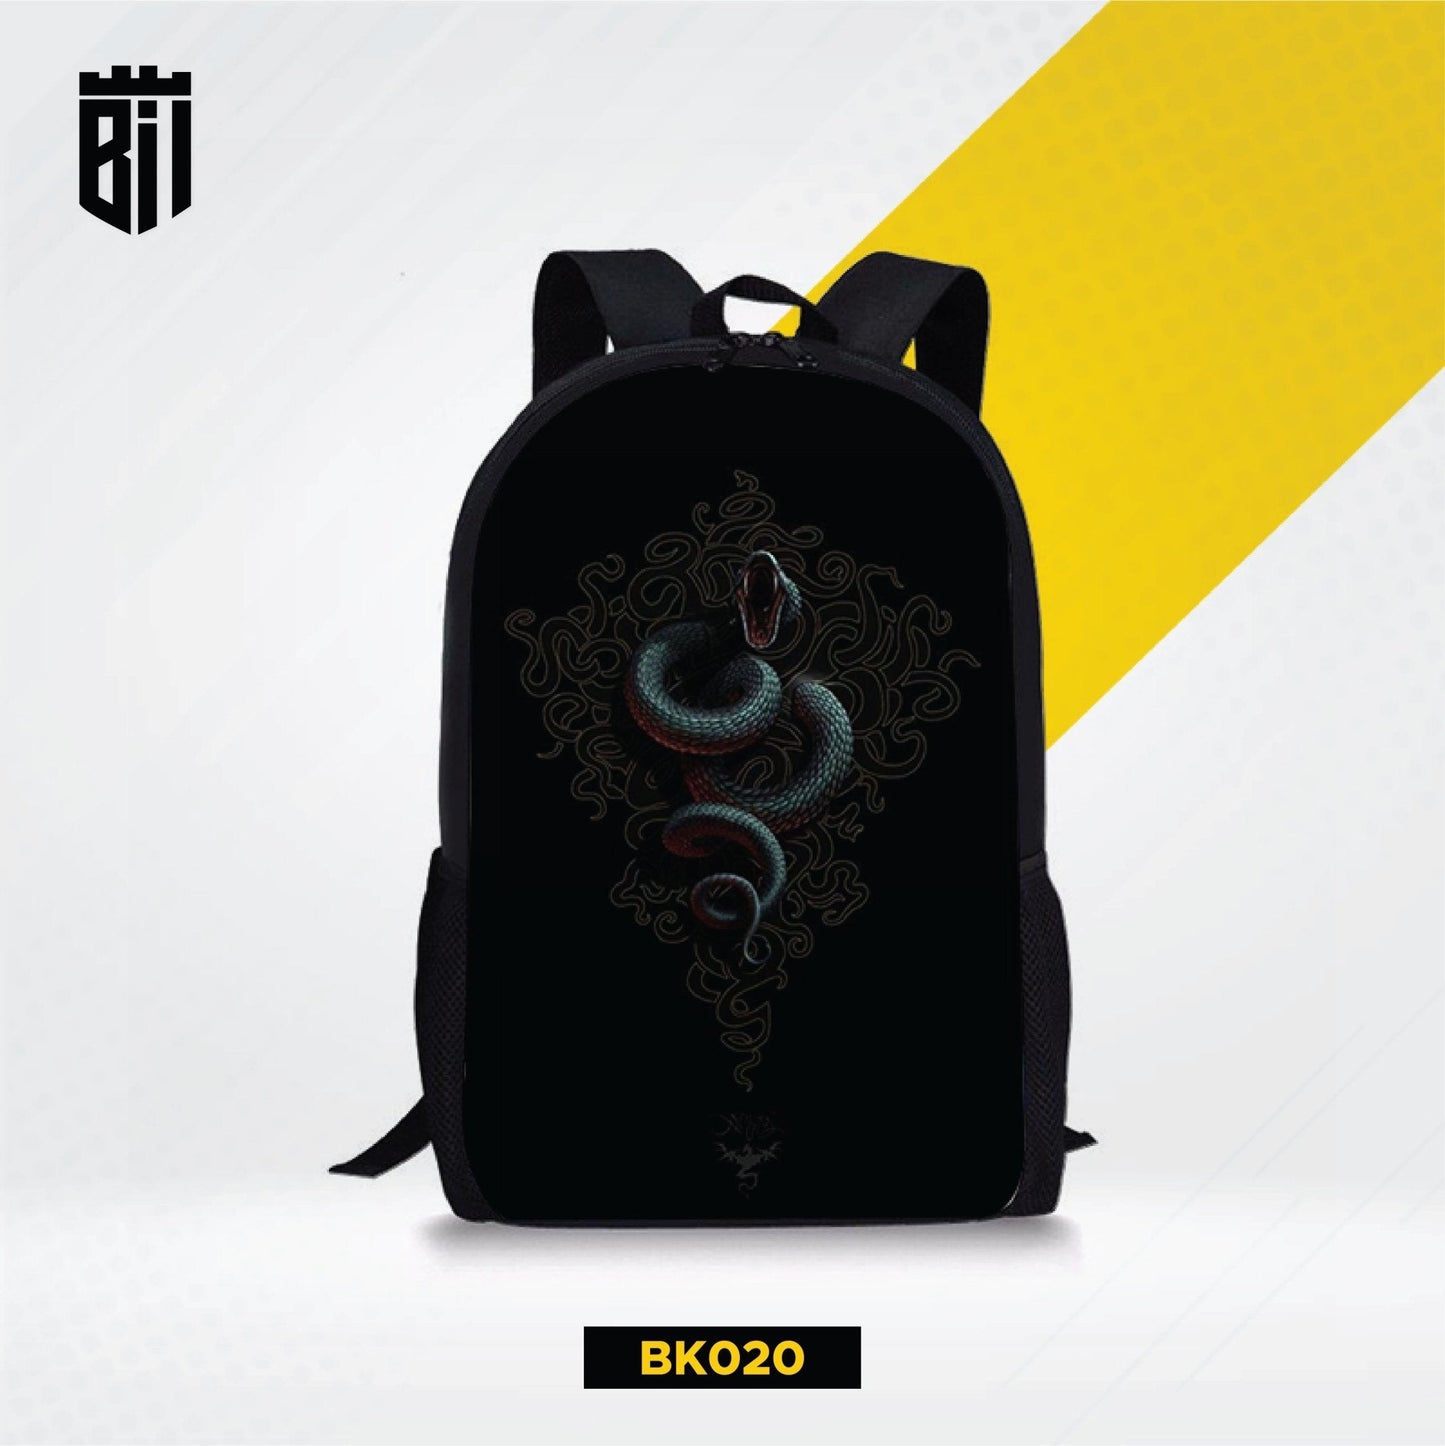 BK020 Black Cobra Backpack - BREACHIT